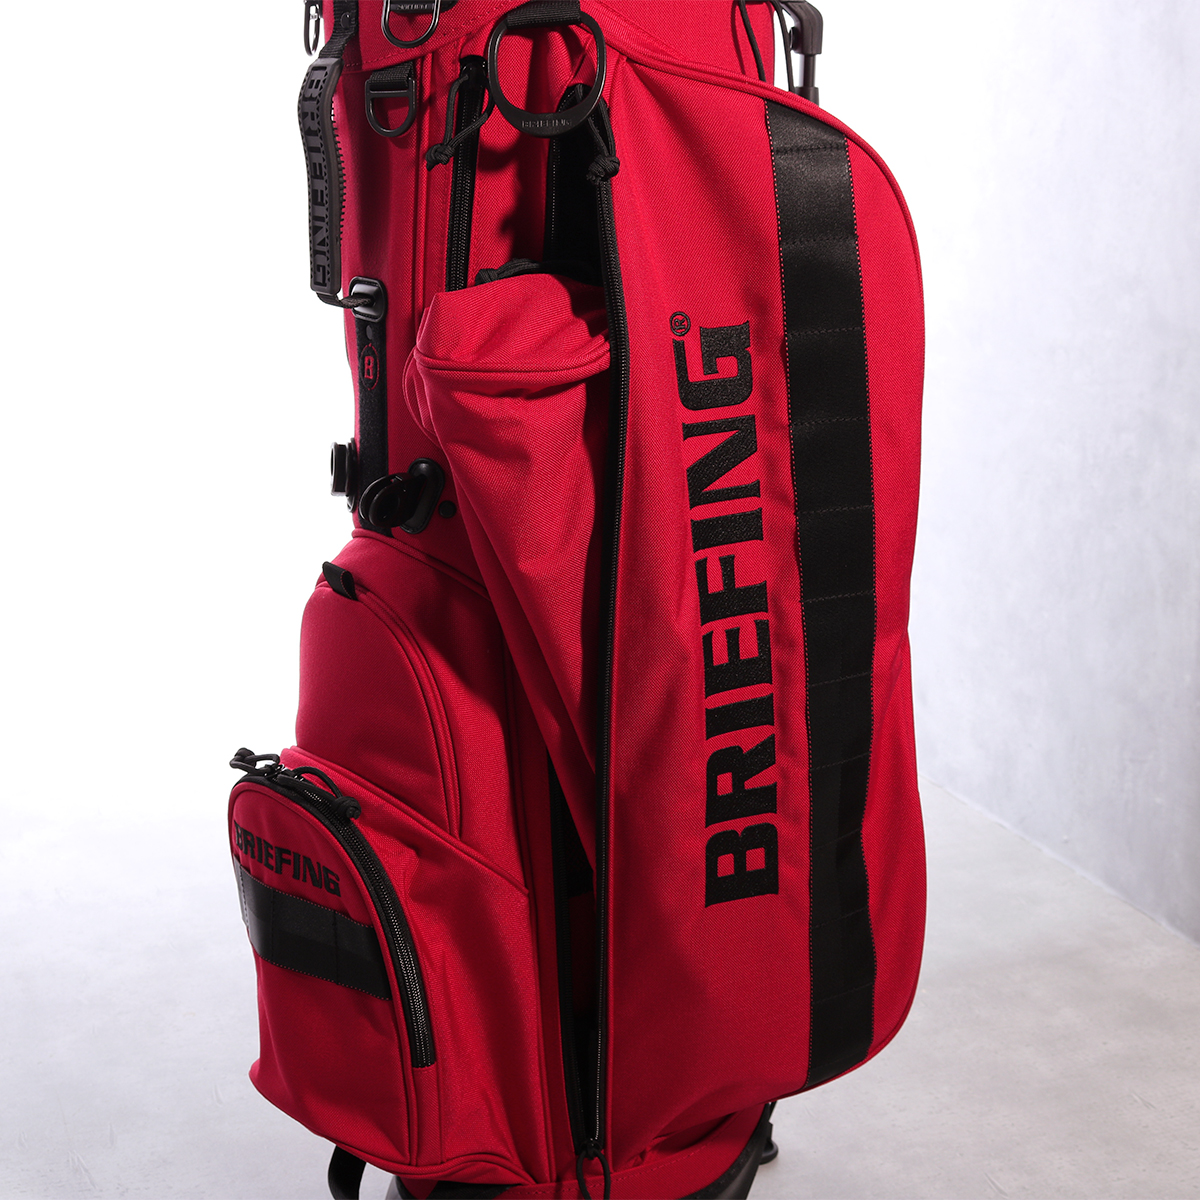 ブリーフィング ゴルフ キャディバッグ スタンド型 ゴルフバッグ 9.5型 